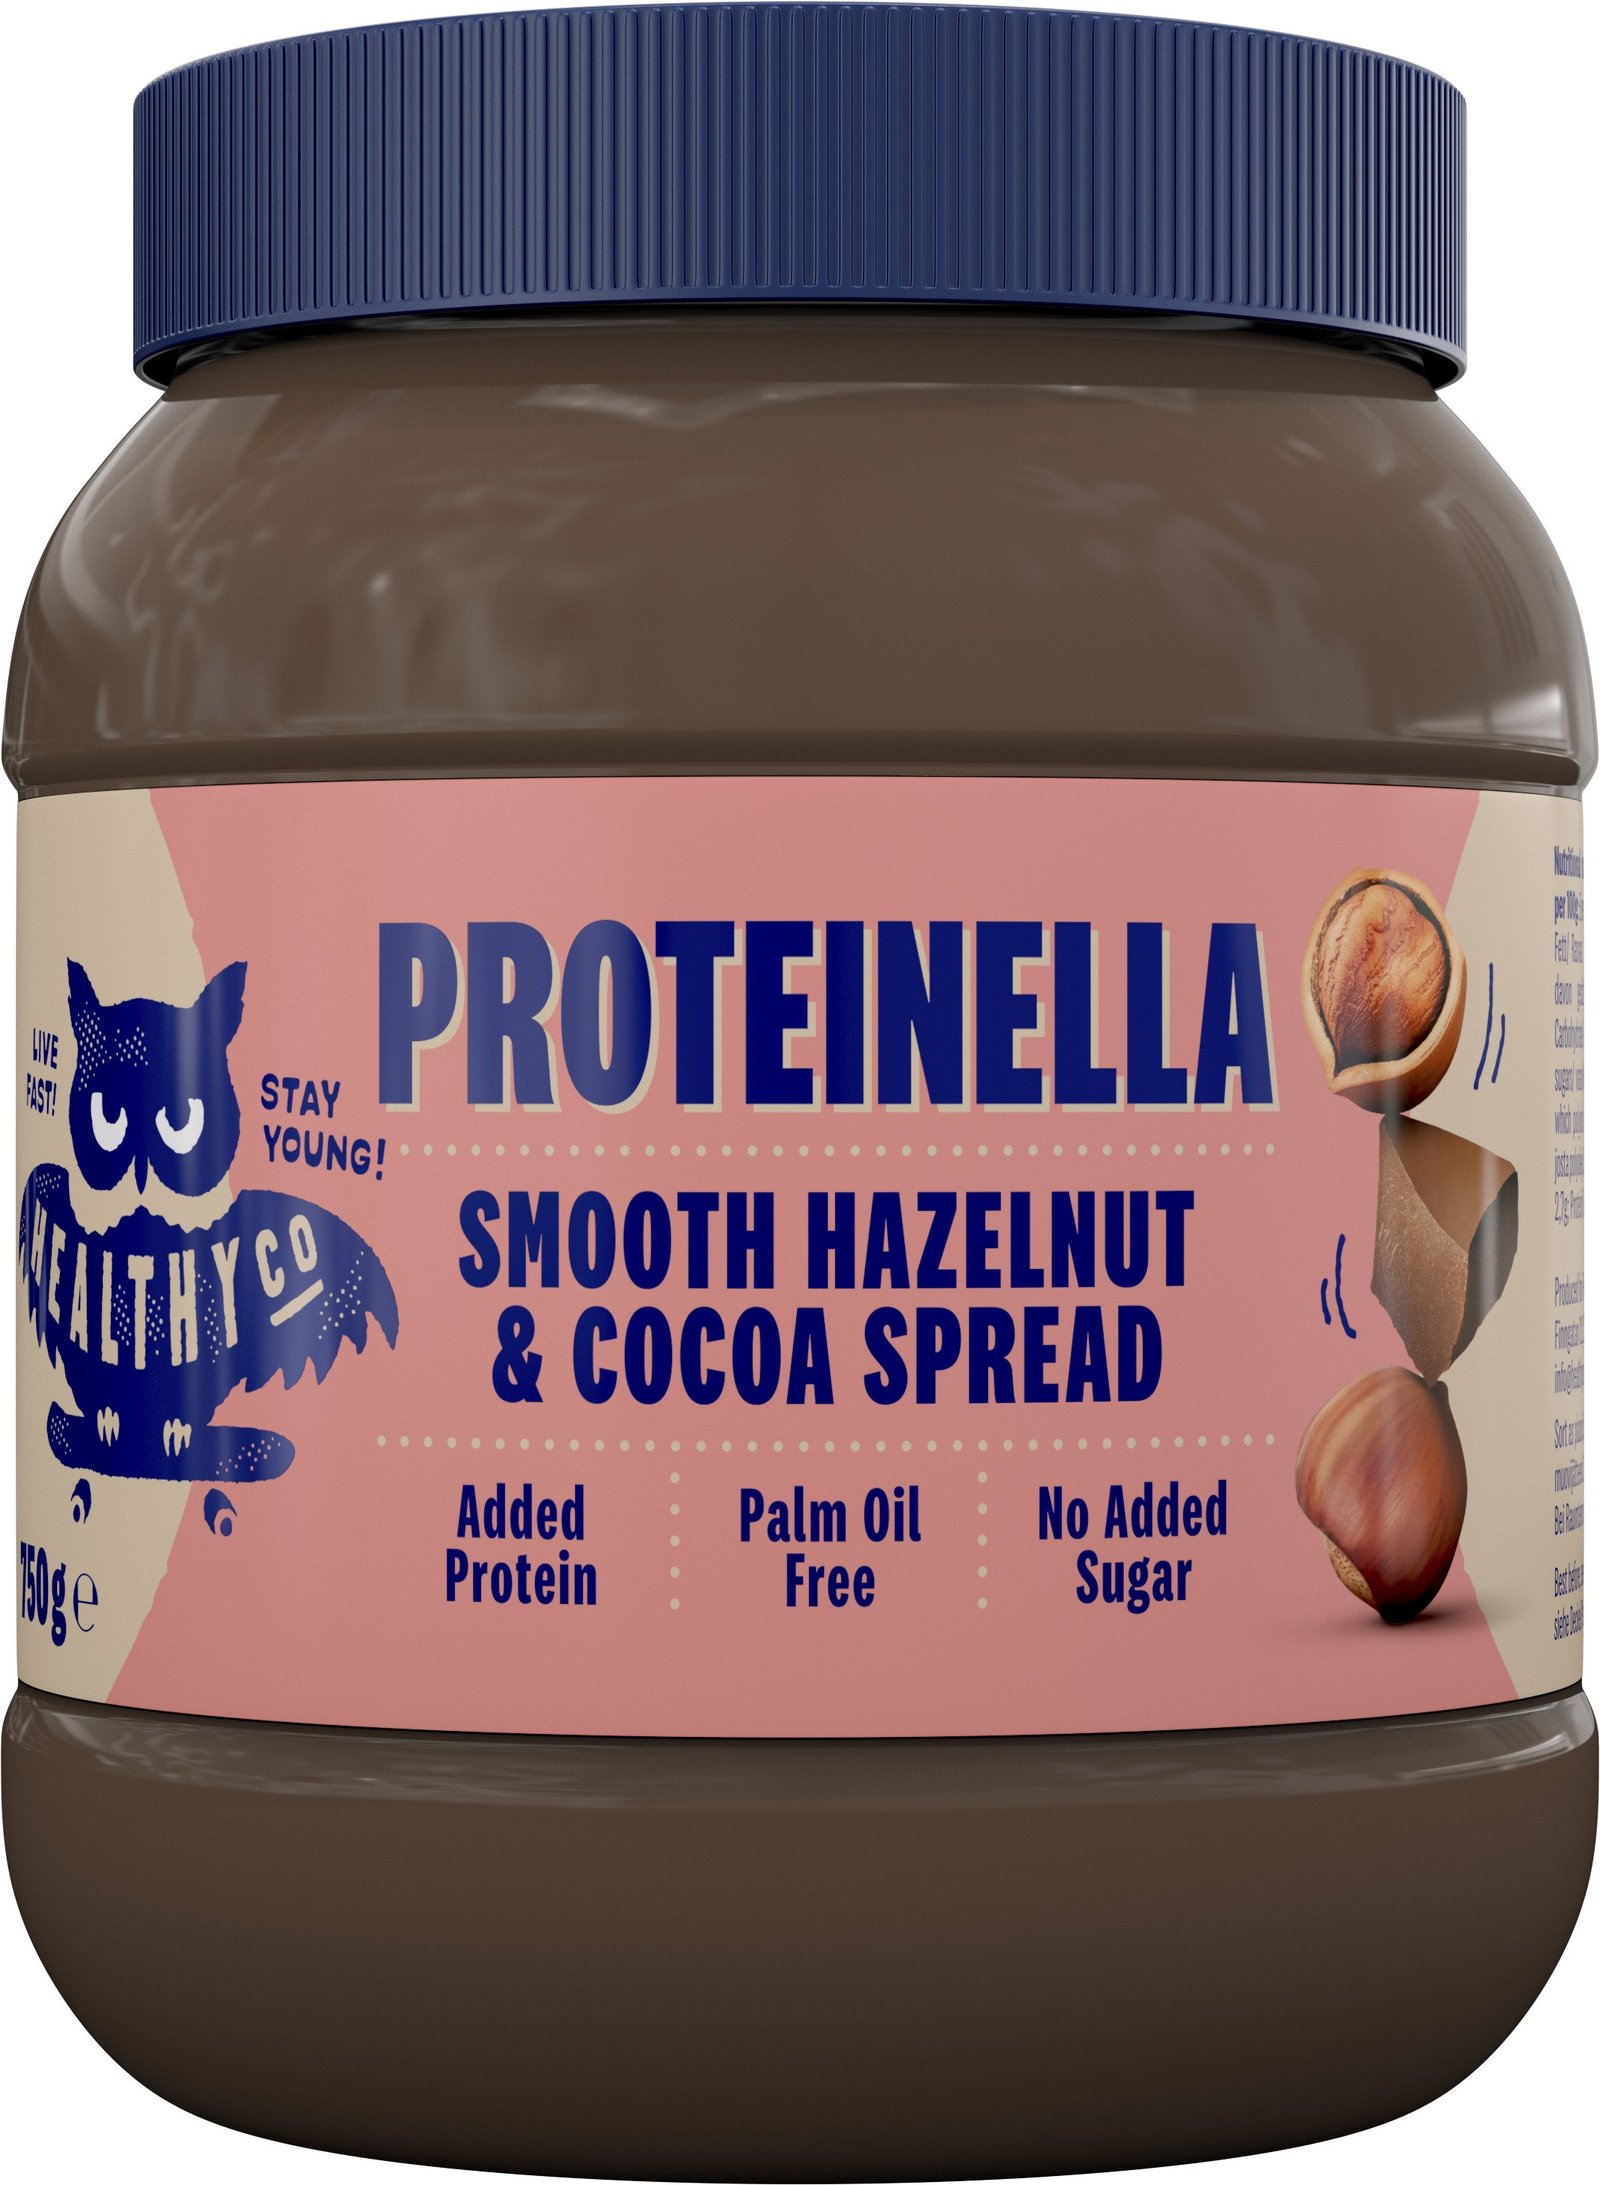 HealthyCo Proteinella Smooth Hazelnut & Cocoa Spread 750 g